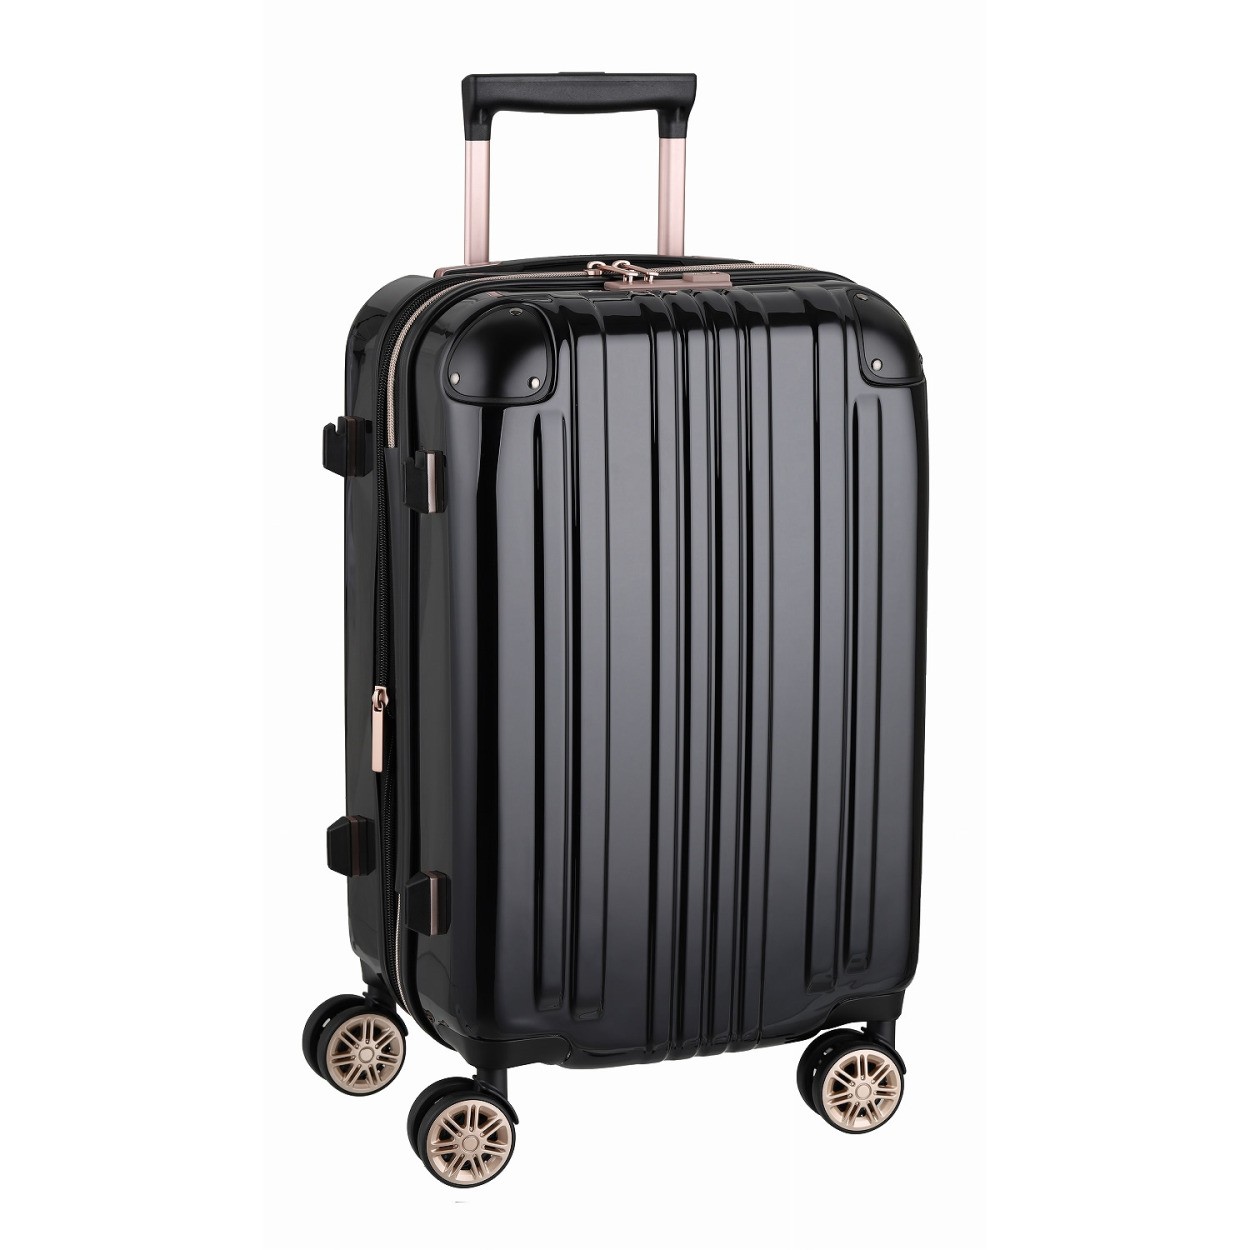 スーツケース キャリーバッグ トランクケース レディースバッグ 機内持ち込み 小型 超軽量 おしゃれ かわいい 拡張 キャリーケース キャリーバッグ 5122 48 5122 48 スーツケースのマリエナマキ 通販 Yahoo ショッピング